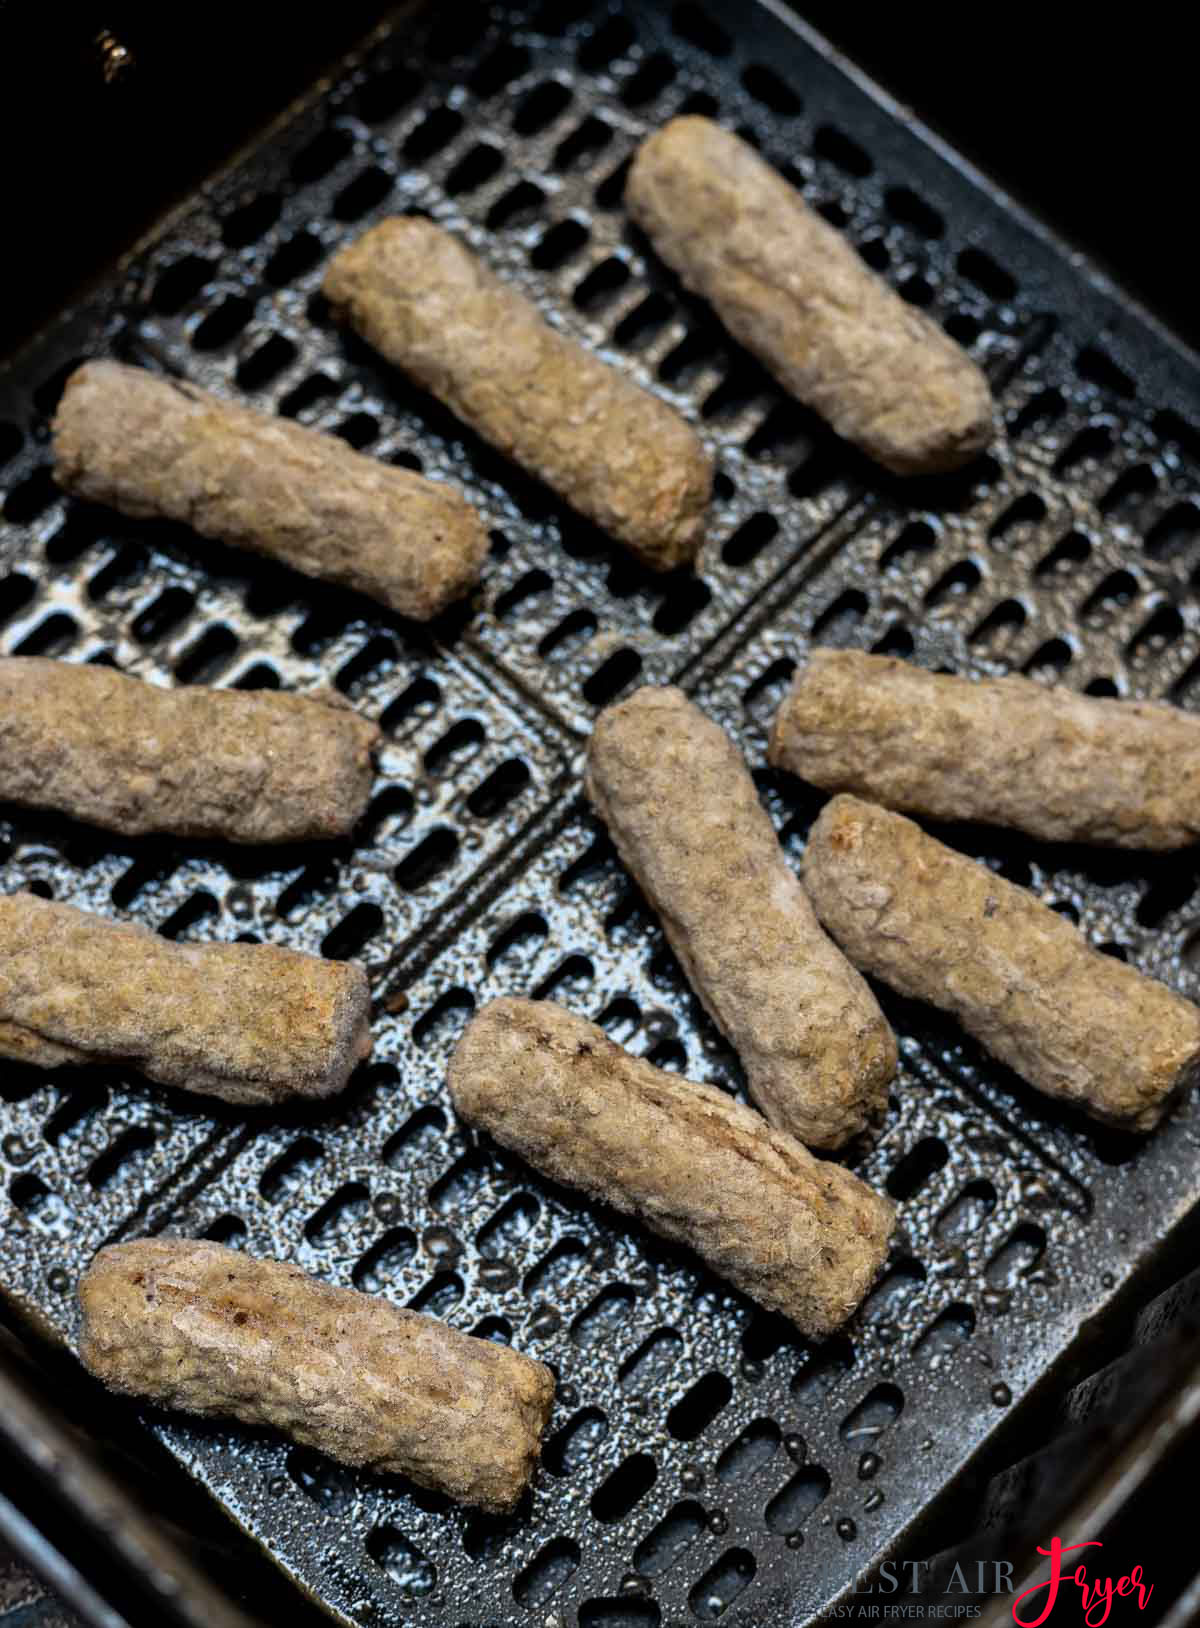 Cooking Breakfast Sausage Links In Air Fryer